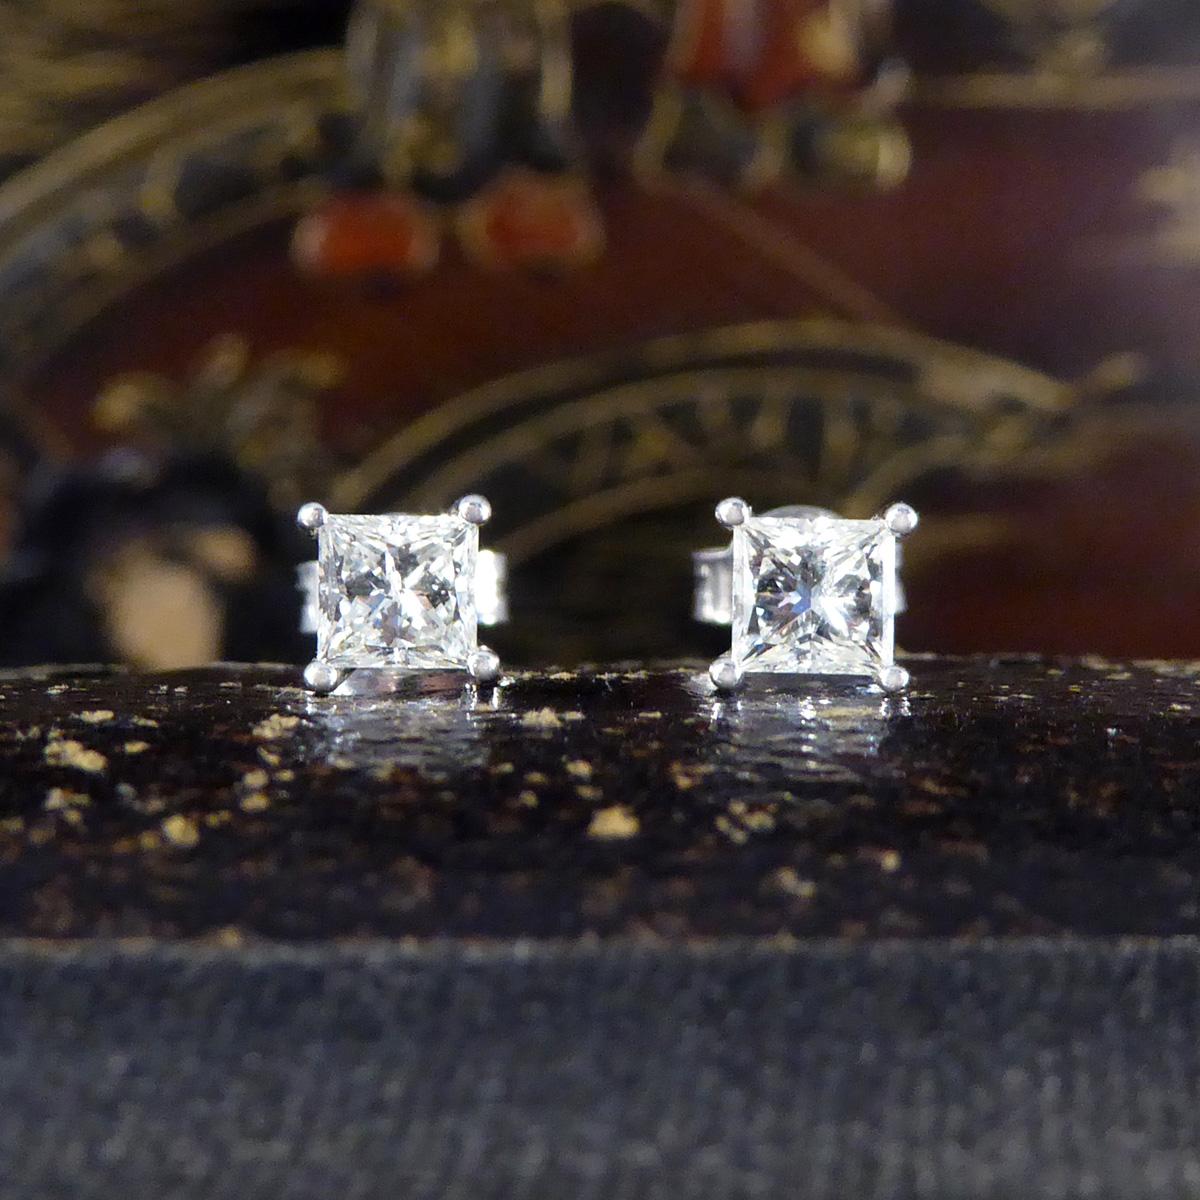 Princess Cut Diamond Stud Earrings Weighing 0.91 Carat in 18 Carat White Gold 4